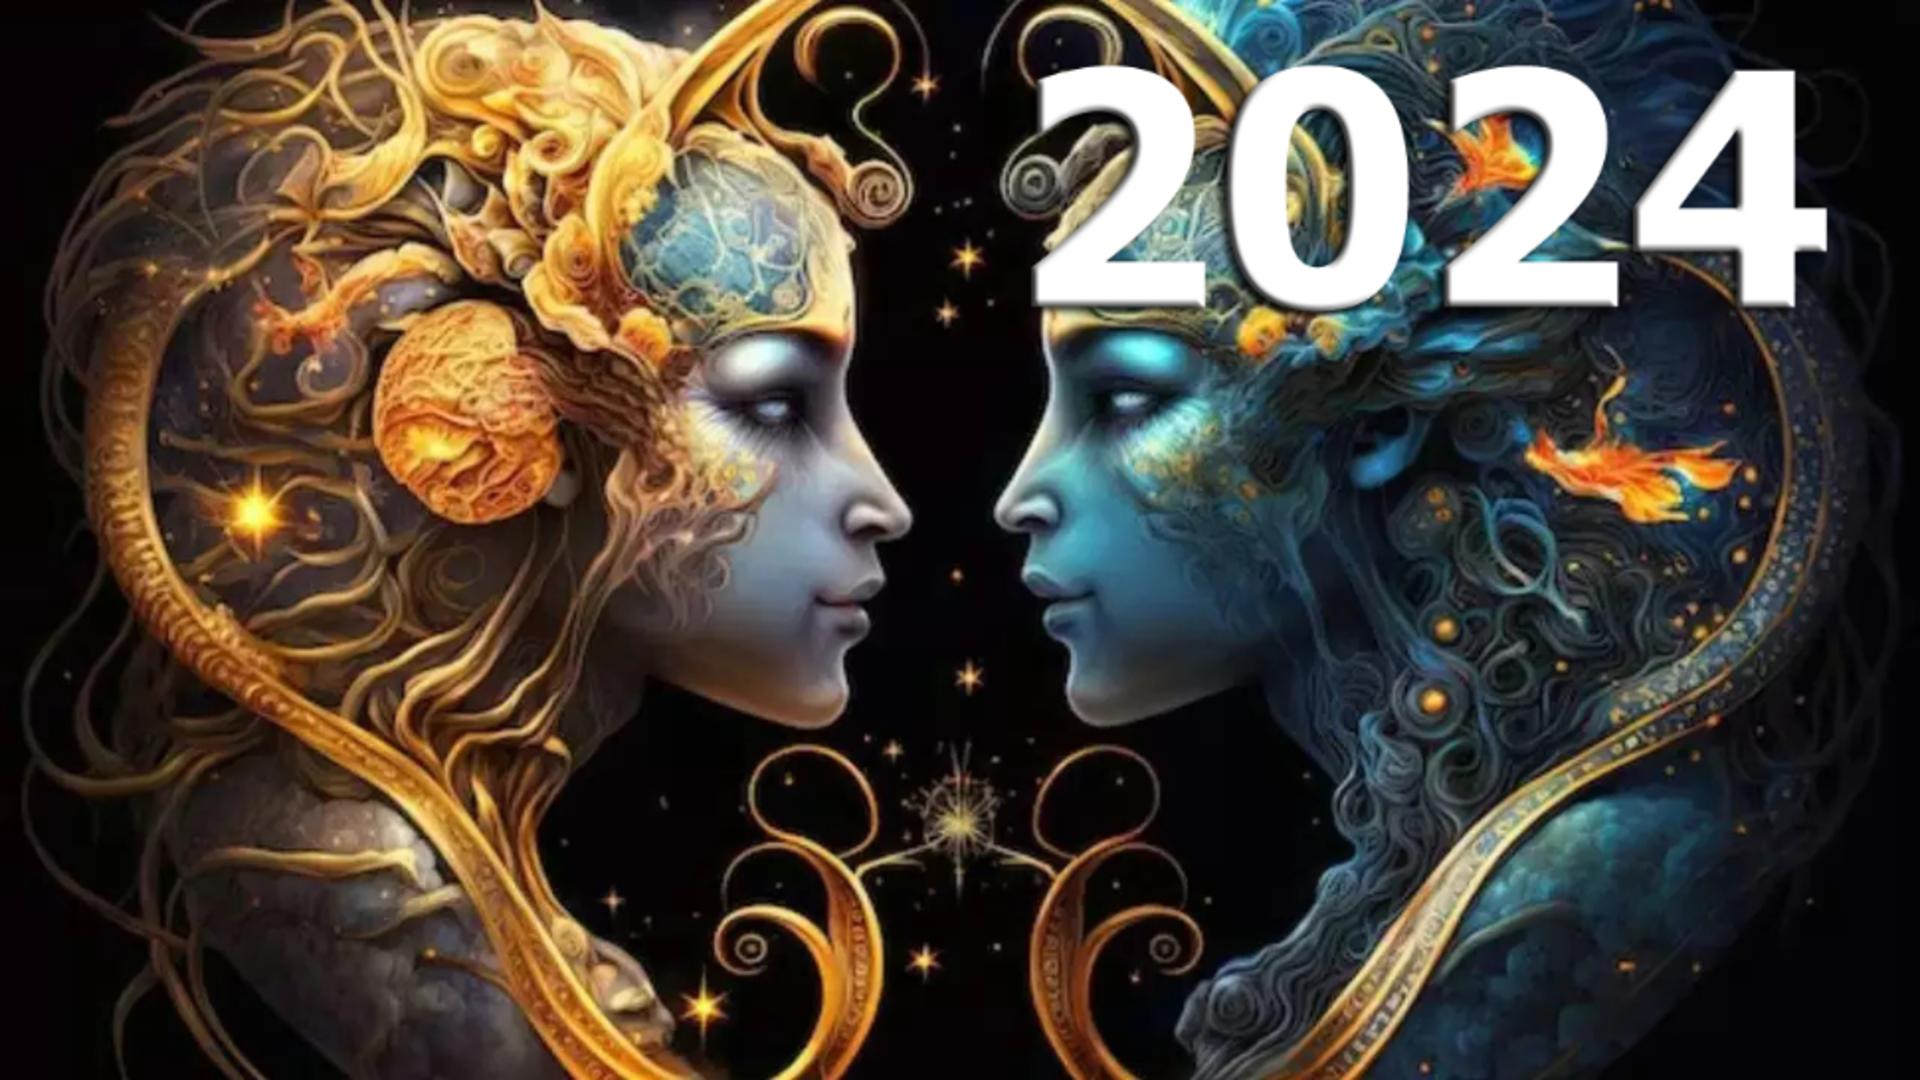 Horoscopul anului 2024 – Gemeni. Șansa de a întâlni oameni unici și incitanți. Atenție la sănătate!